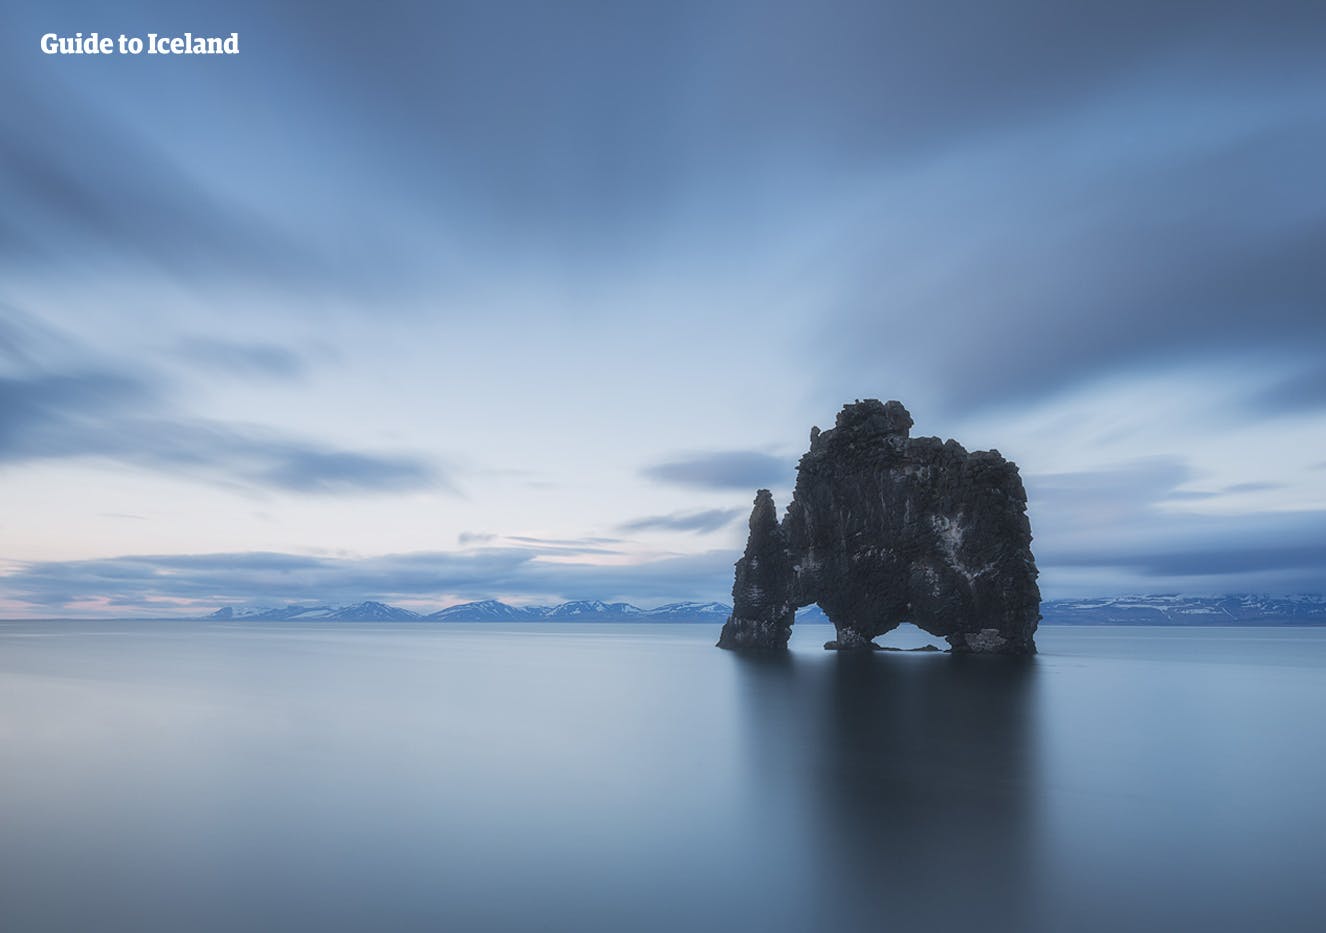 De indrukwekkende rotsformatie Hvítserkur in Noord-IJsland, die als een angstaanjagende draak uit de oceaan oprijst